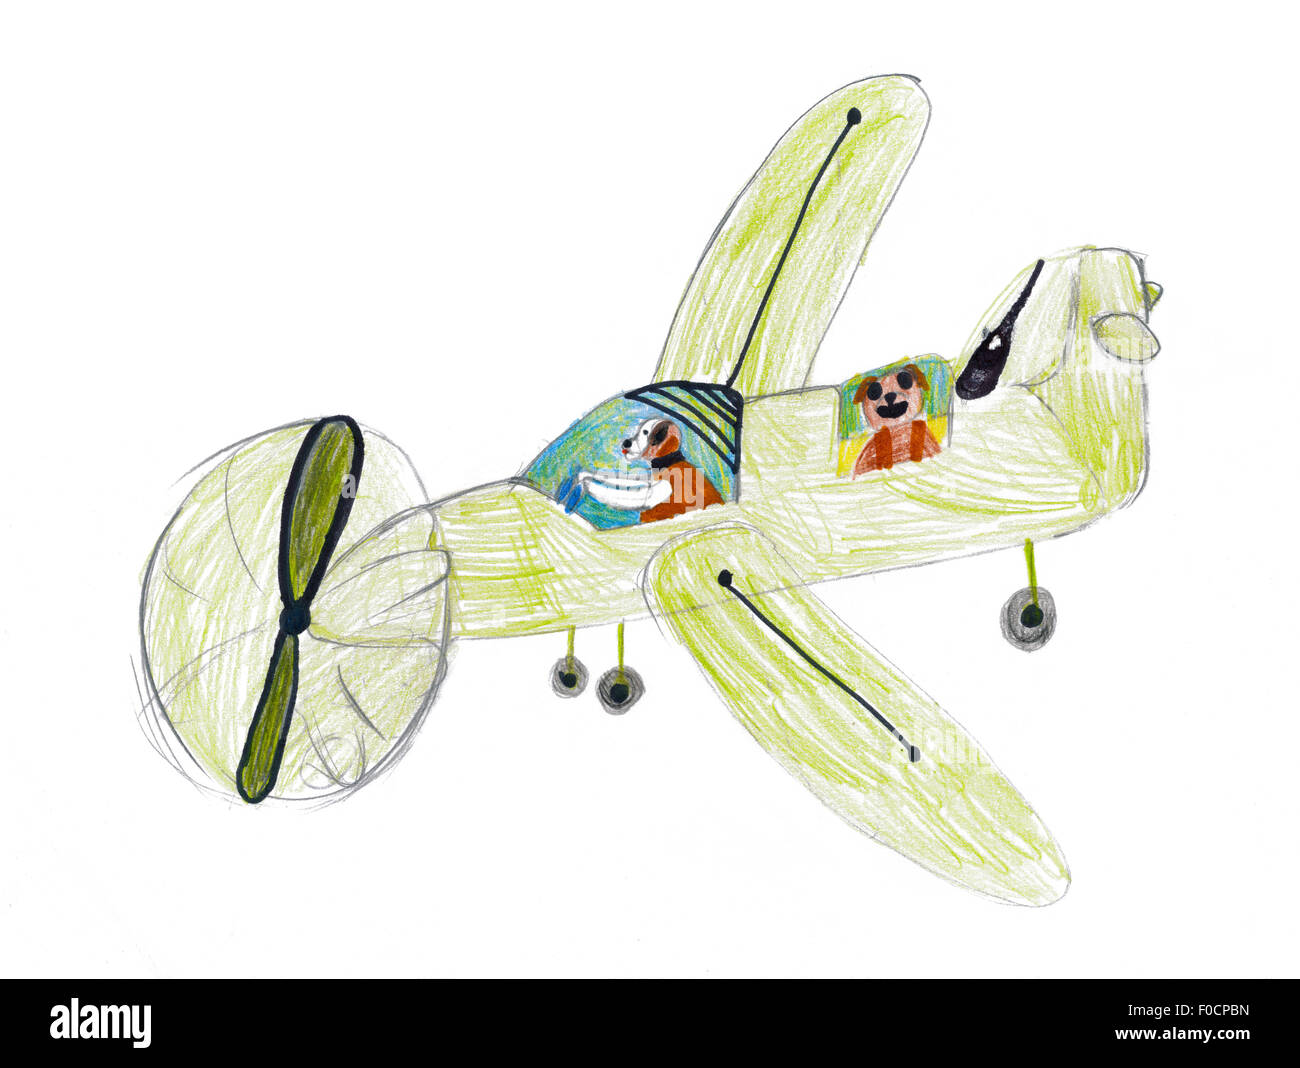 Hunde, die mit dem Flugzeug fliegen. Kinder Zeichnung Stockfoto